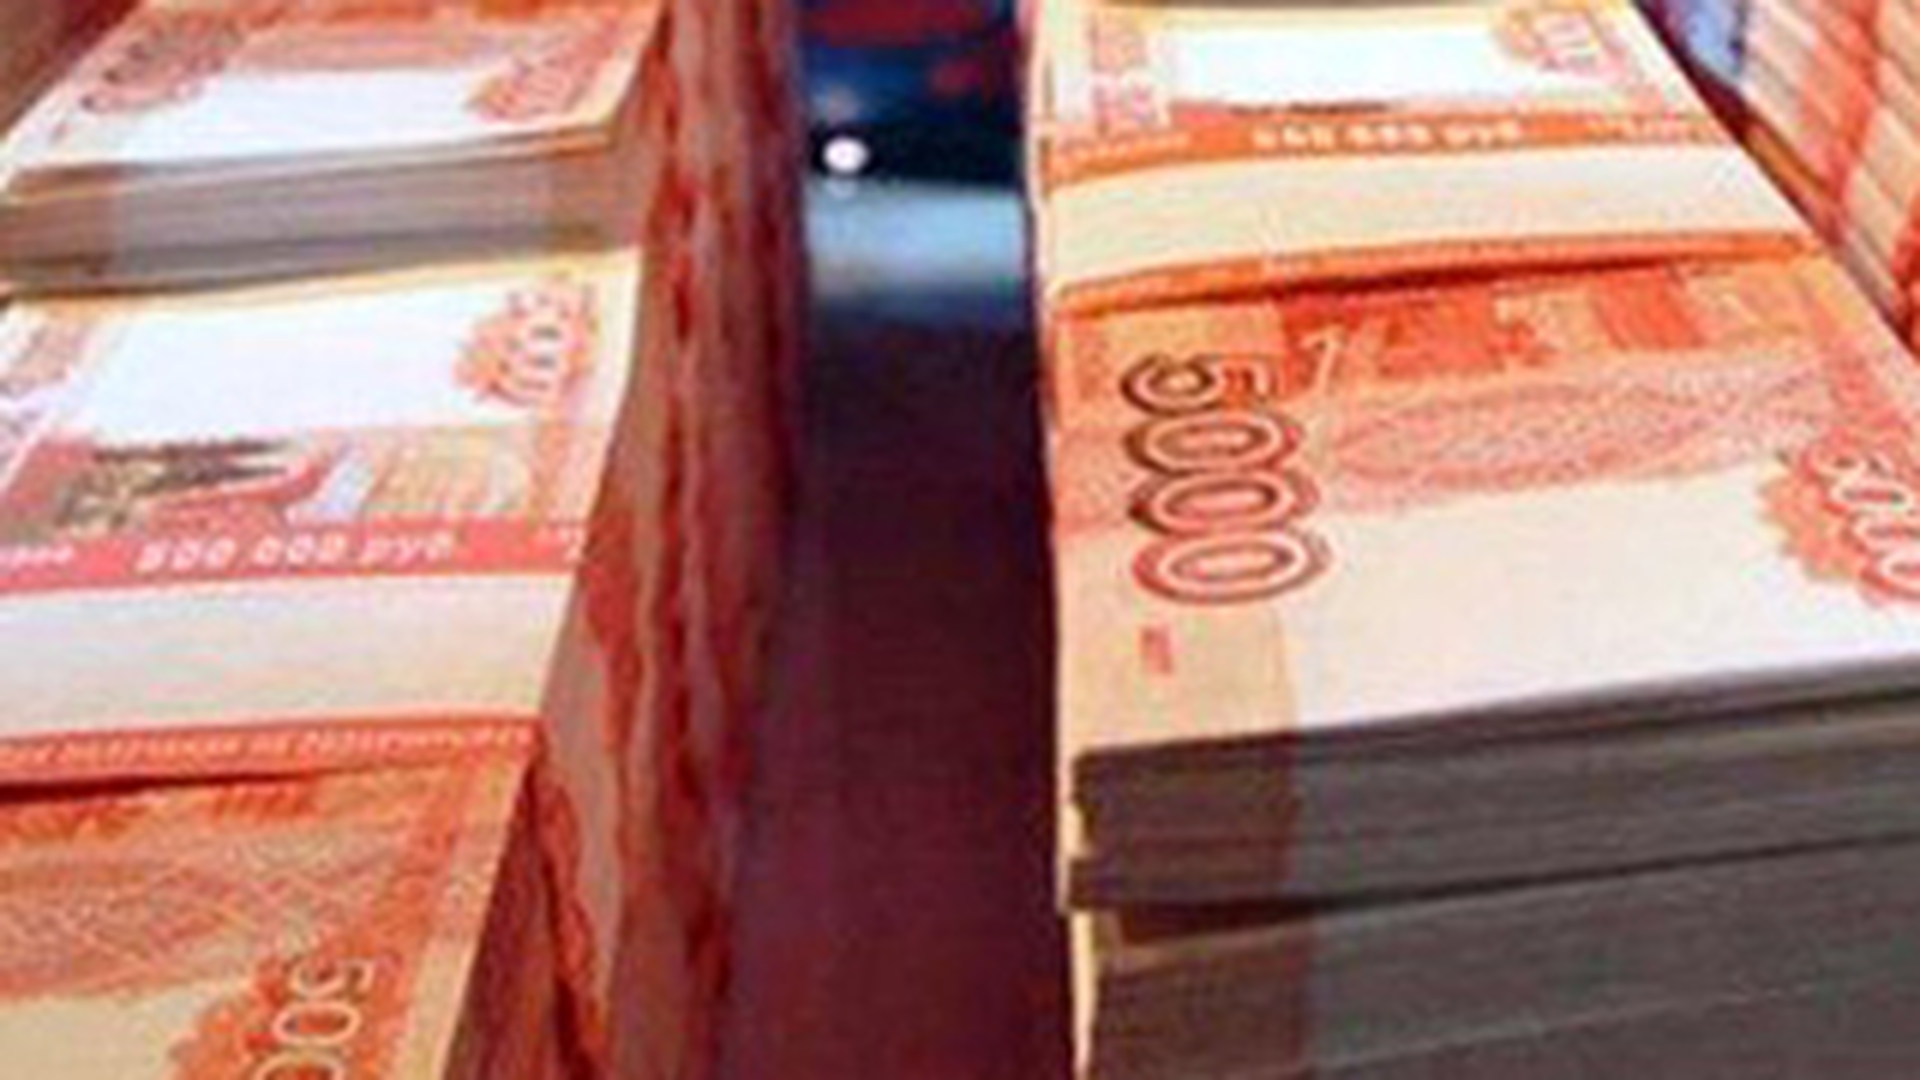 фото денег 5000 рублей много пачек